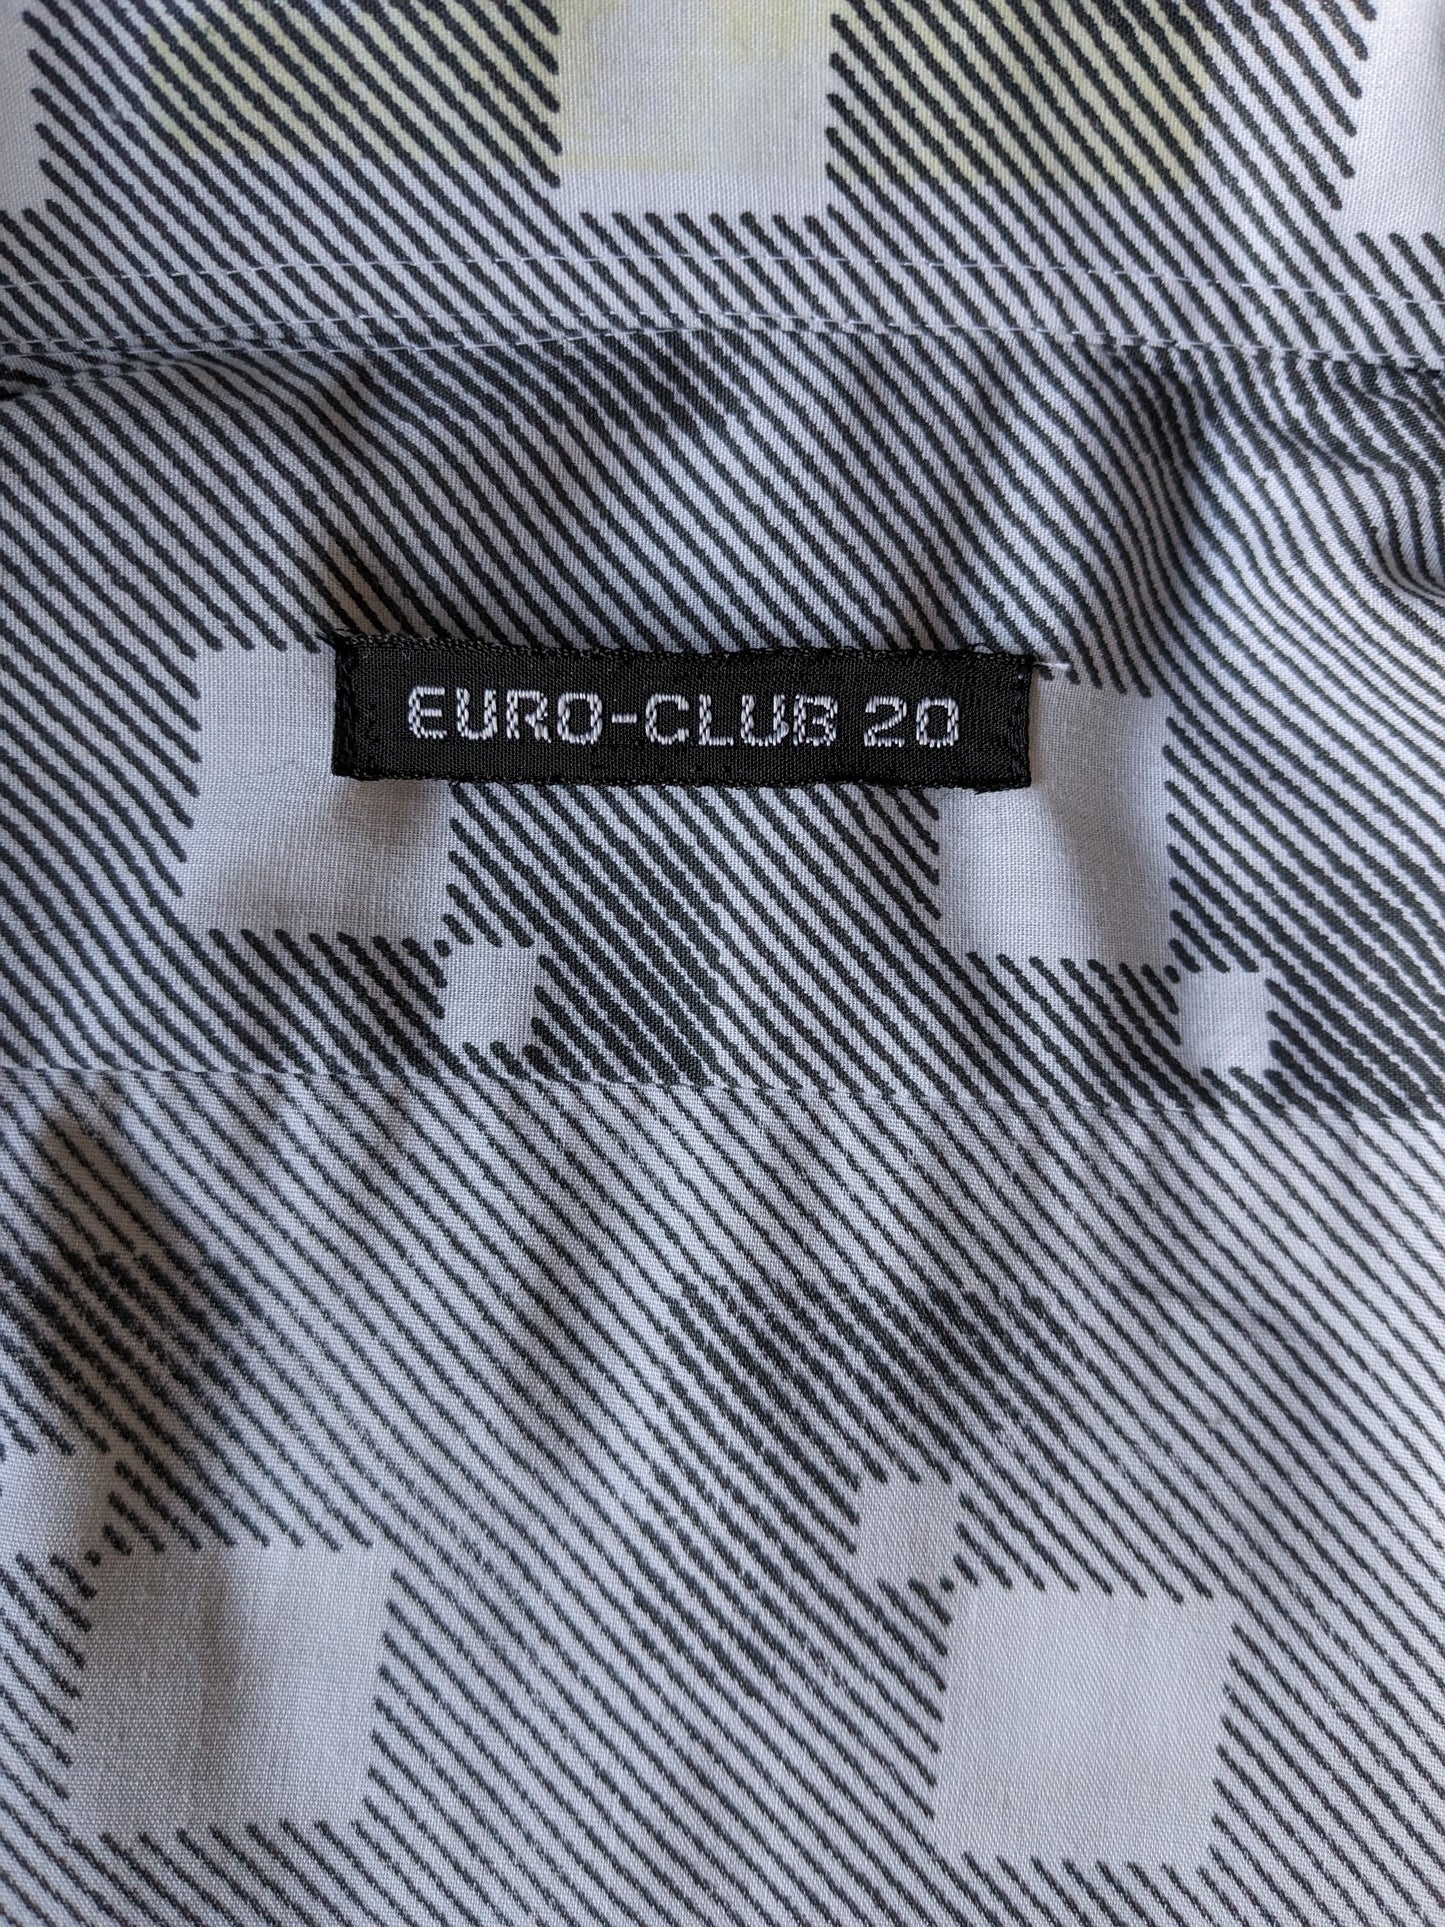 Vintage Euro-Club-20 70er Hemd mit Punktkragen. Weißer grauer Druck. Größe M.